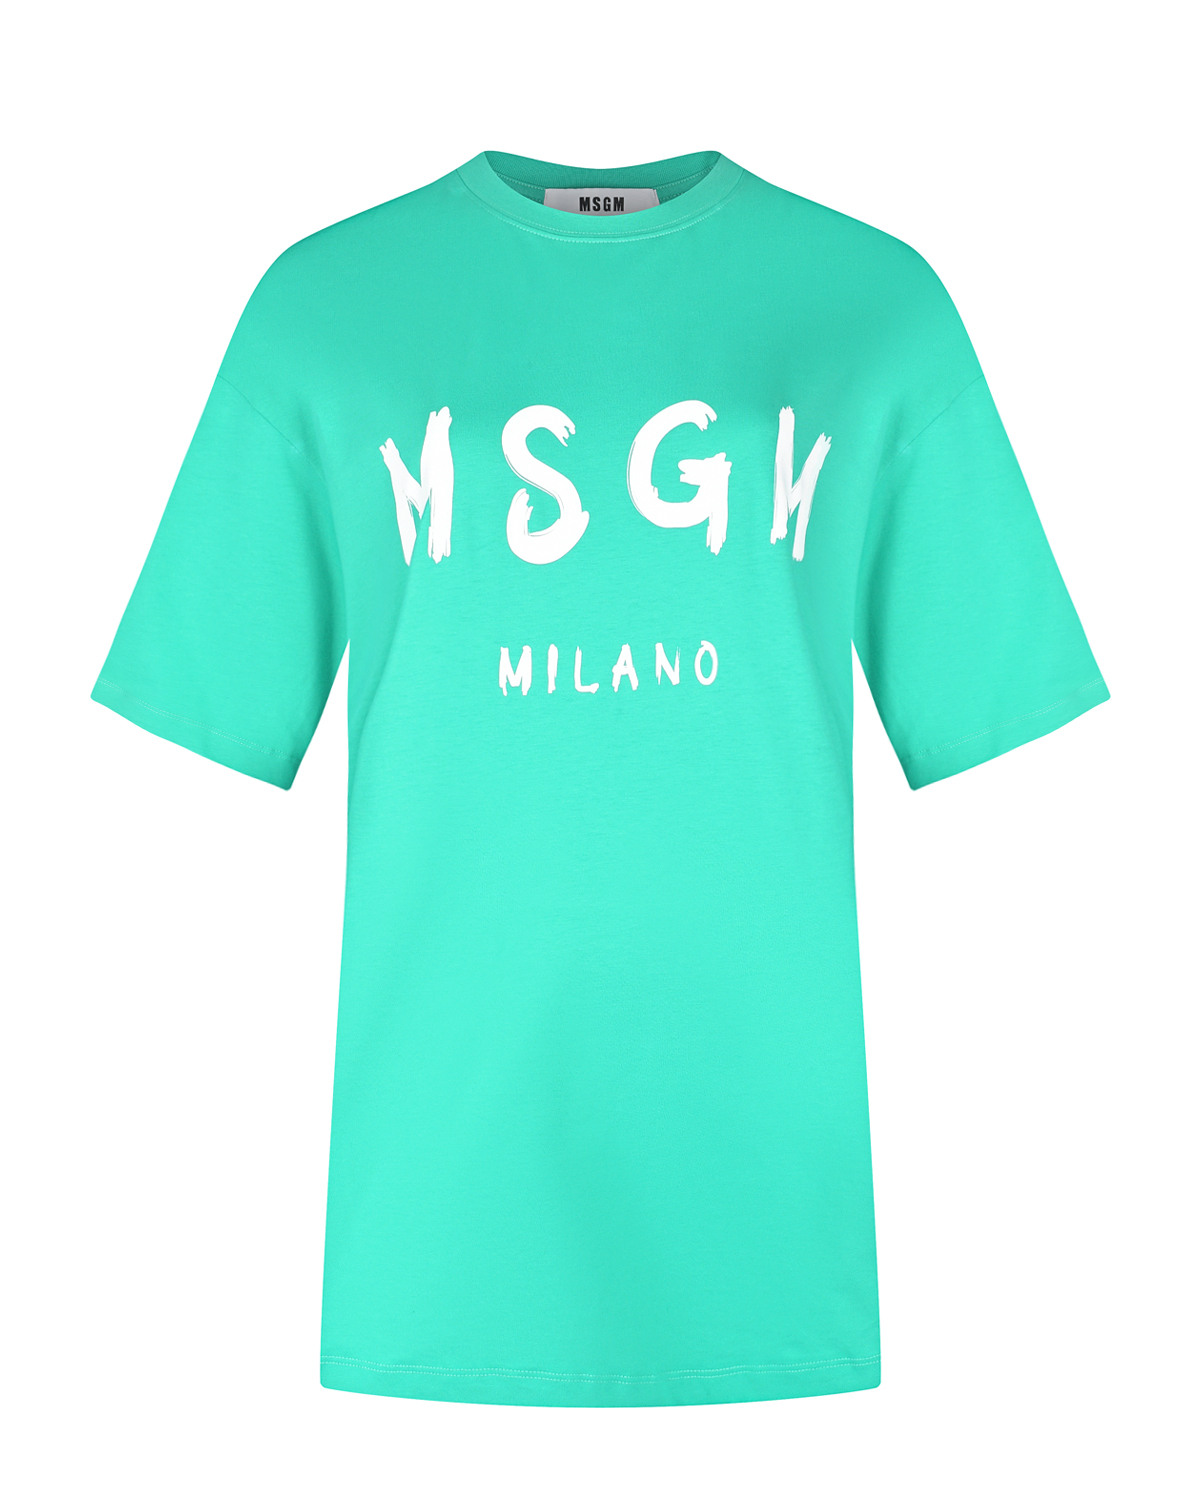 Платье-футболка с лого MSGM, размер 42, цвет зеленый - фото 1